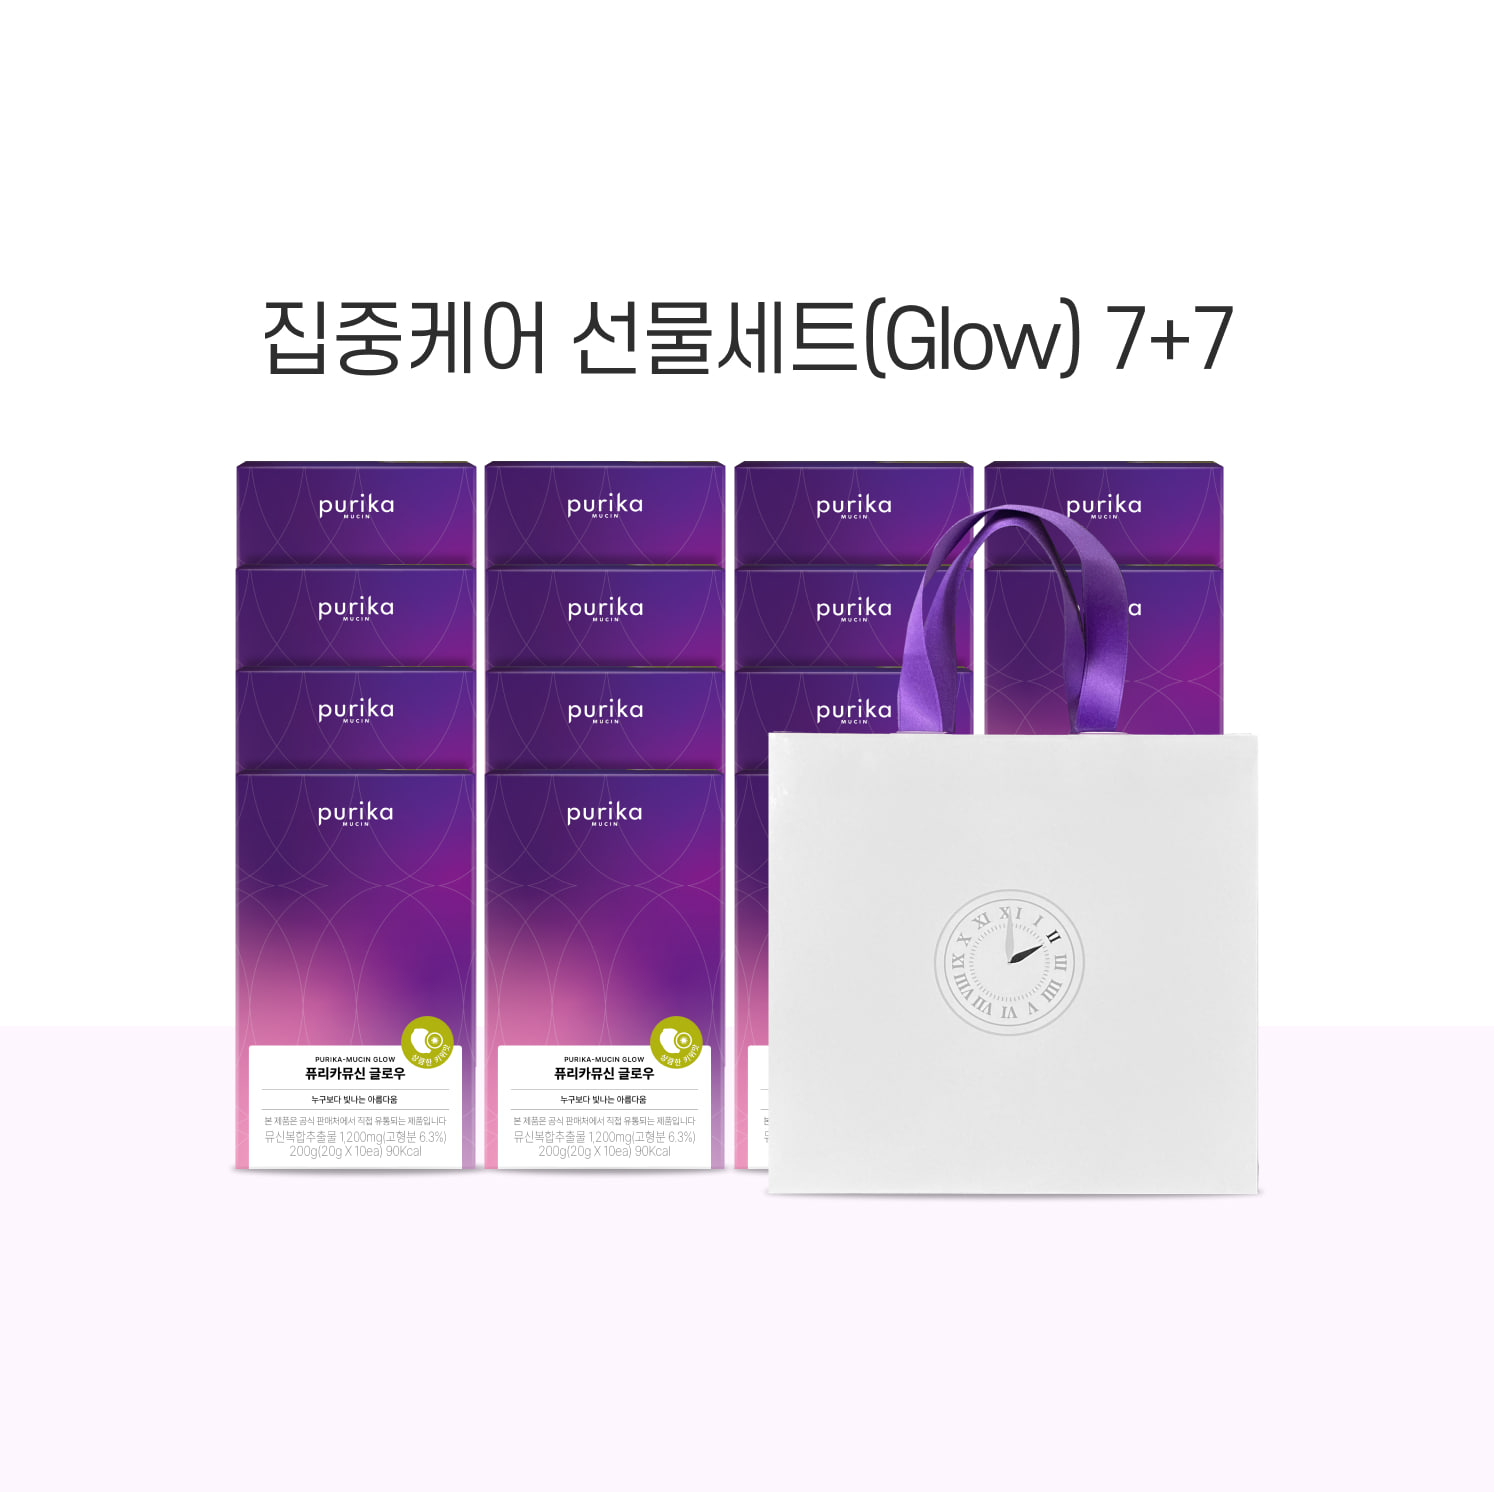 [기간한정] 뮤신 Glow 7+7 선물세트 (14box,140일) + 쇼핑백 무료증정(1개)